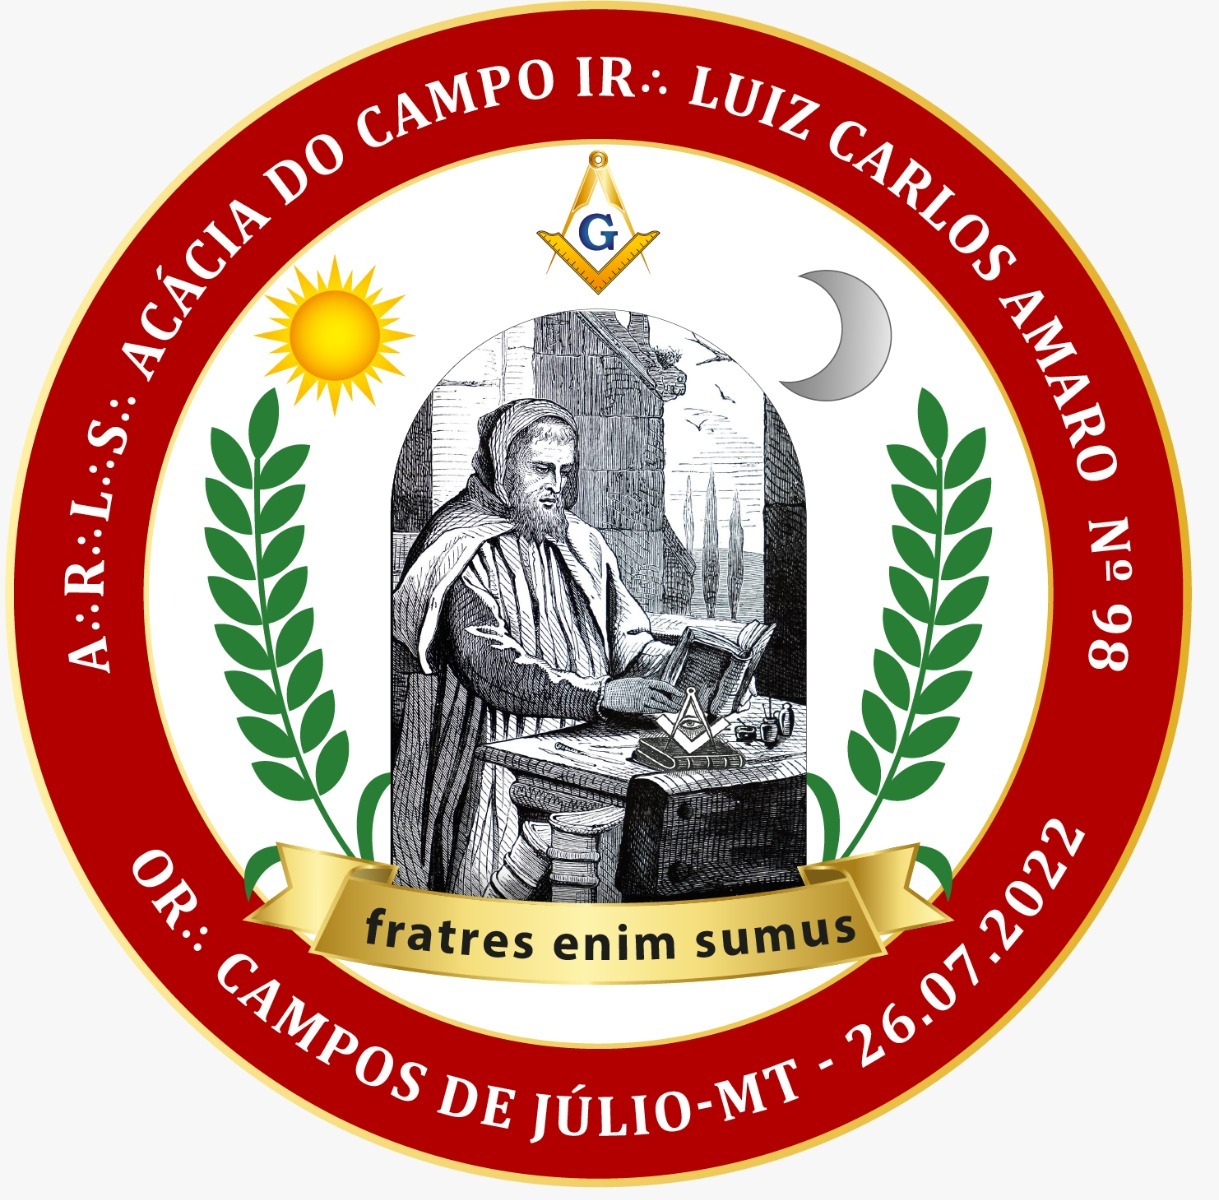 Acácia do Campo Irmão Luiz Carlos Amaro Nº 98